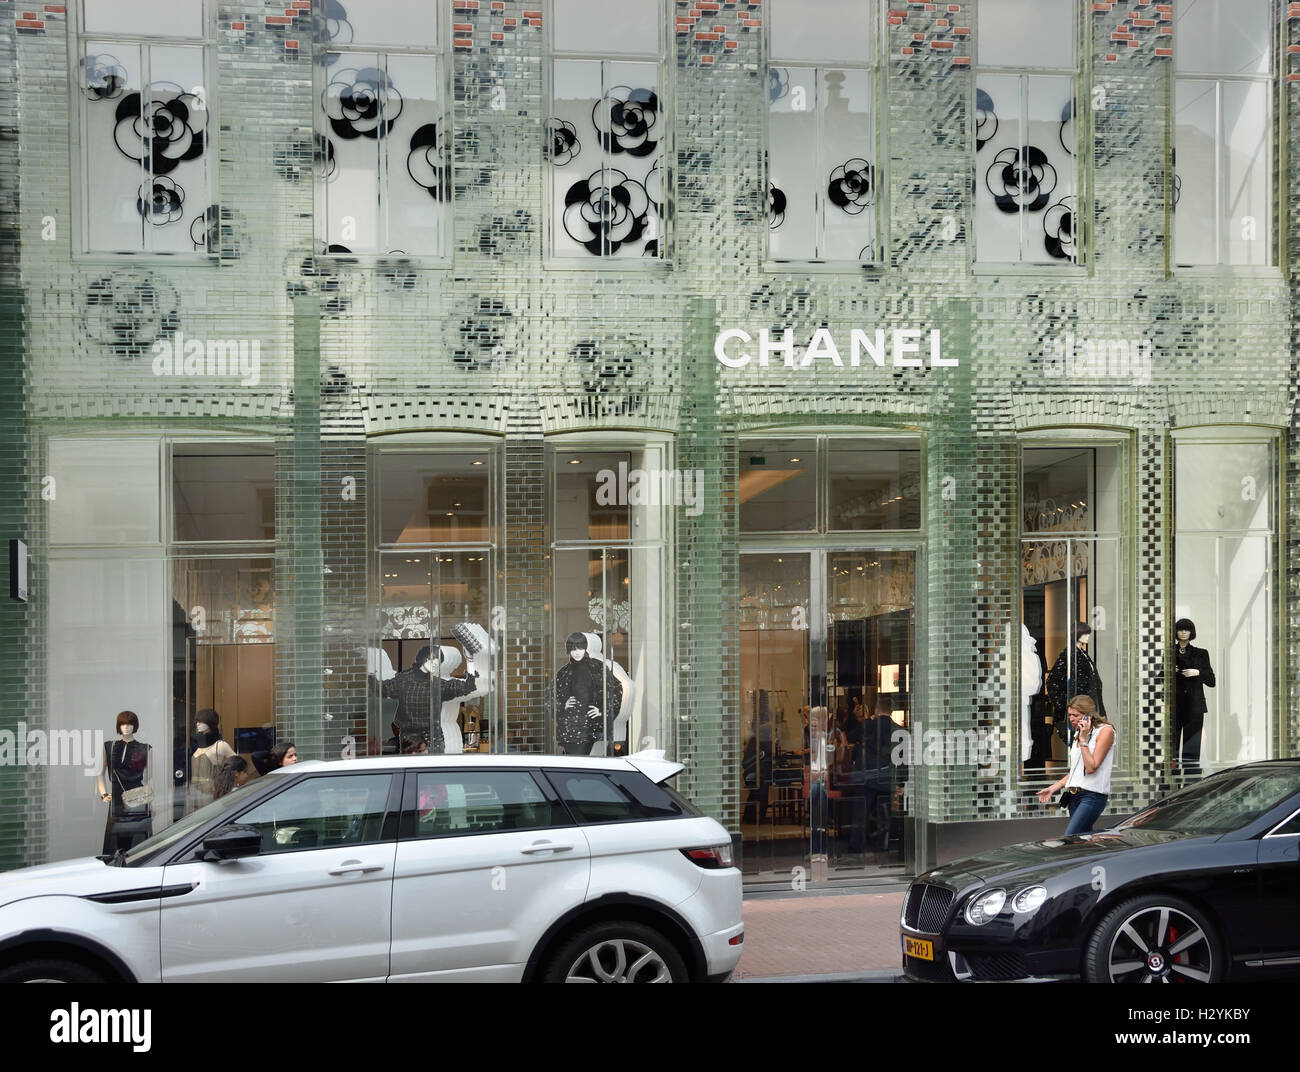 Chanel c'est un bâtiment surprenant à la PC Hooftstraat, la façade est en fait entièrement de verre. Le magasin phare, qui porte le nom "Crystal" Maisons Amsterdam Pays-Bas Banque D'Images